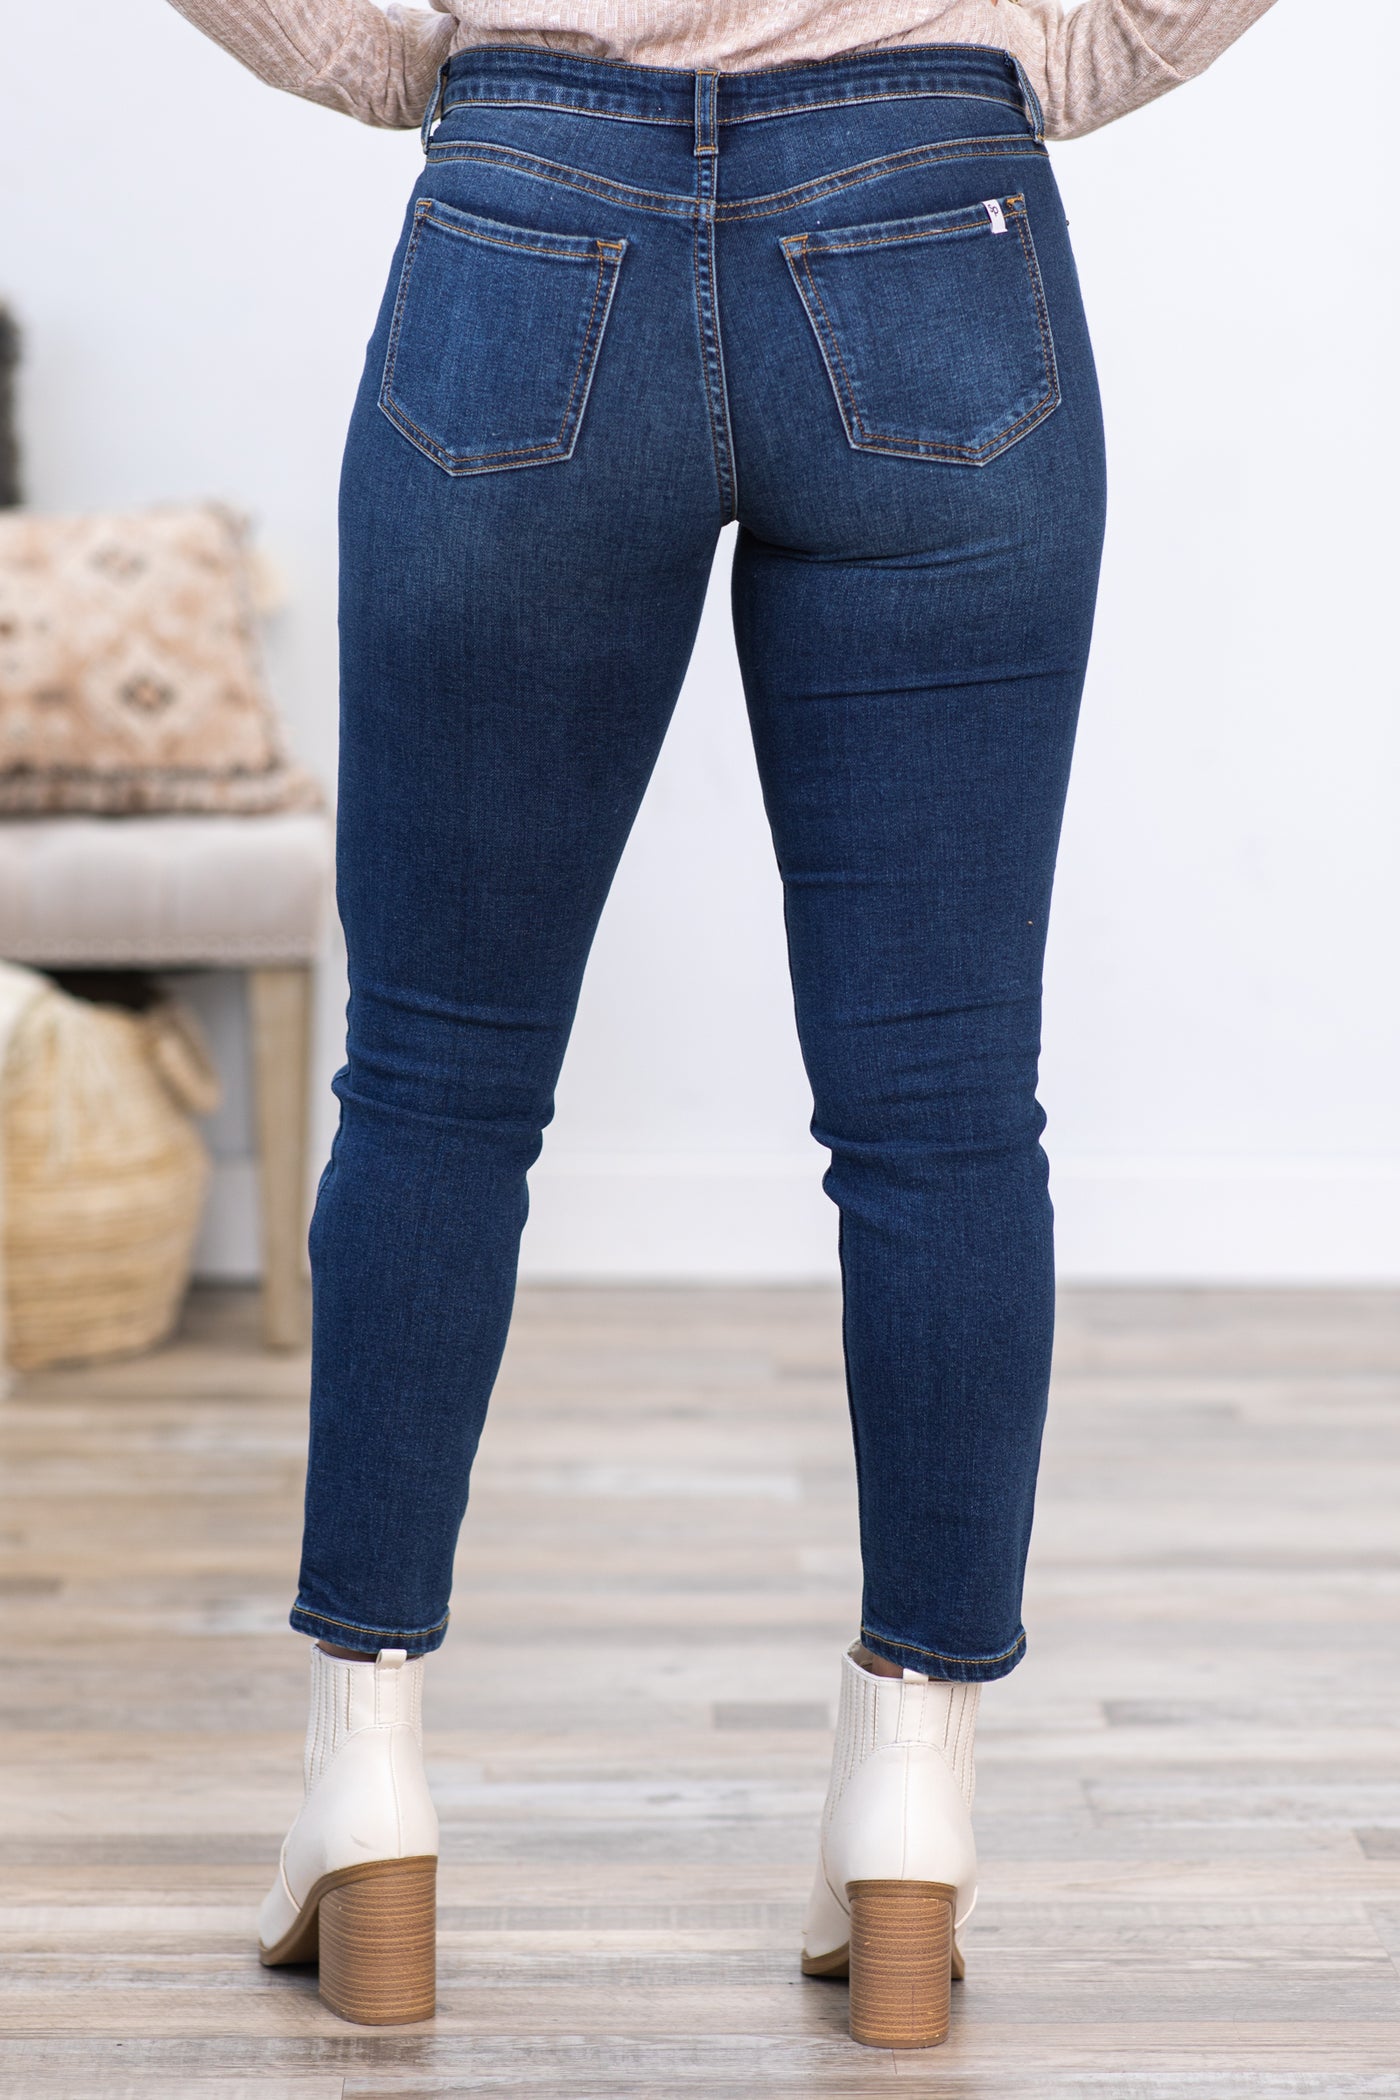 Sneak Peek Medium Wash Mid Rise Skinny Jeans